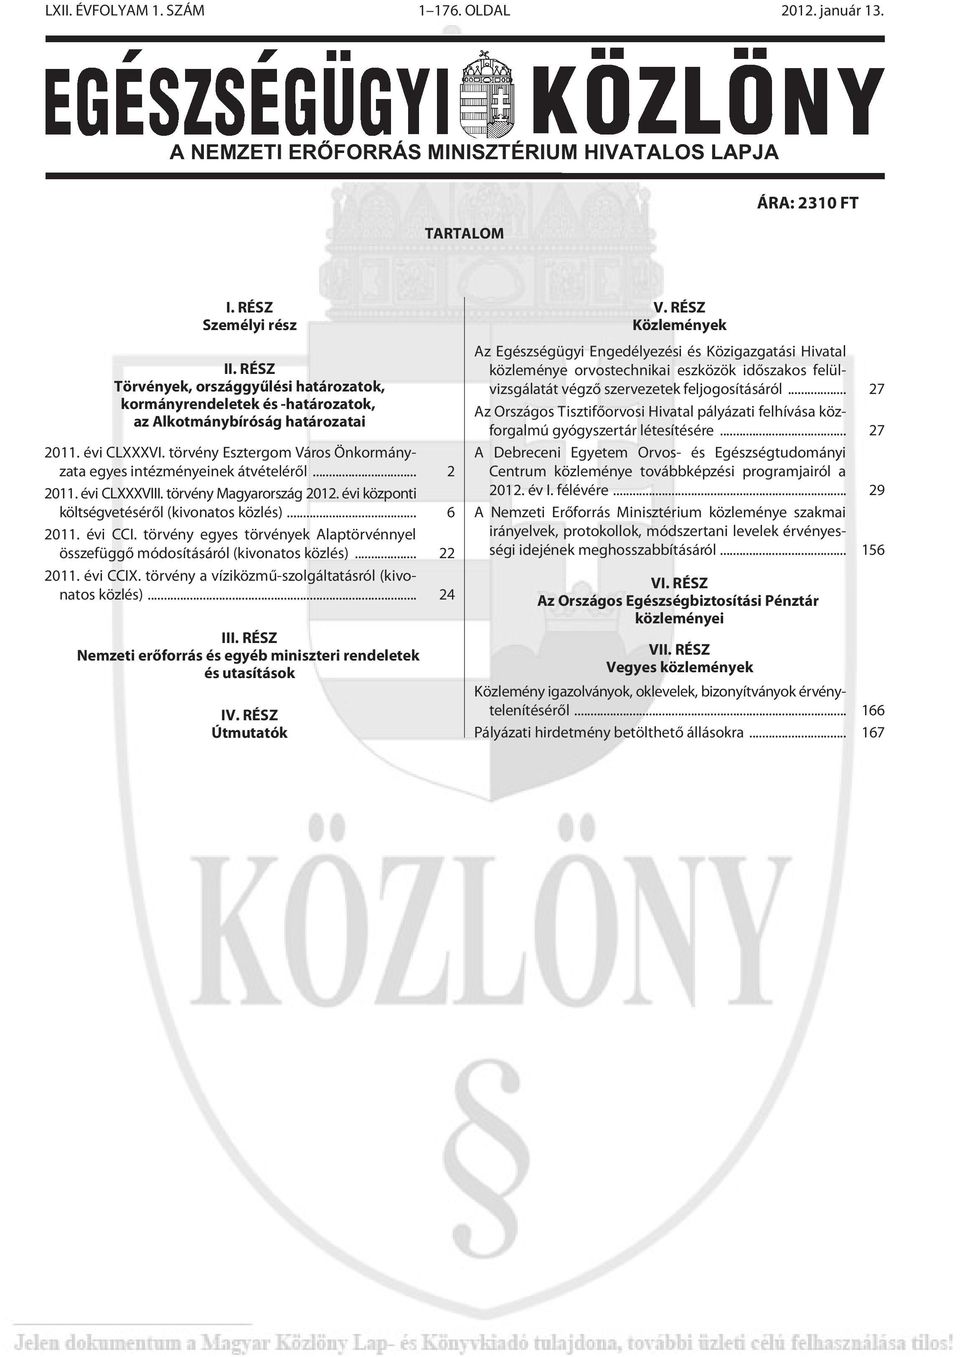 .. 2 2011. évi CLXXXVIII. törvény Magyarország 2012. évi központi költségvetésérõl (kivonatos közlés)... 6 2011. évi CCI.